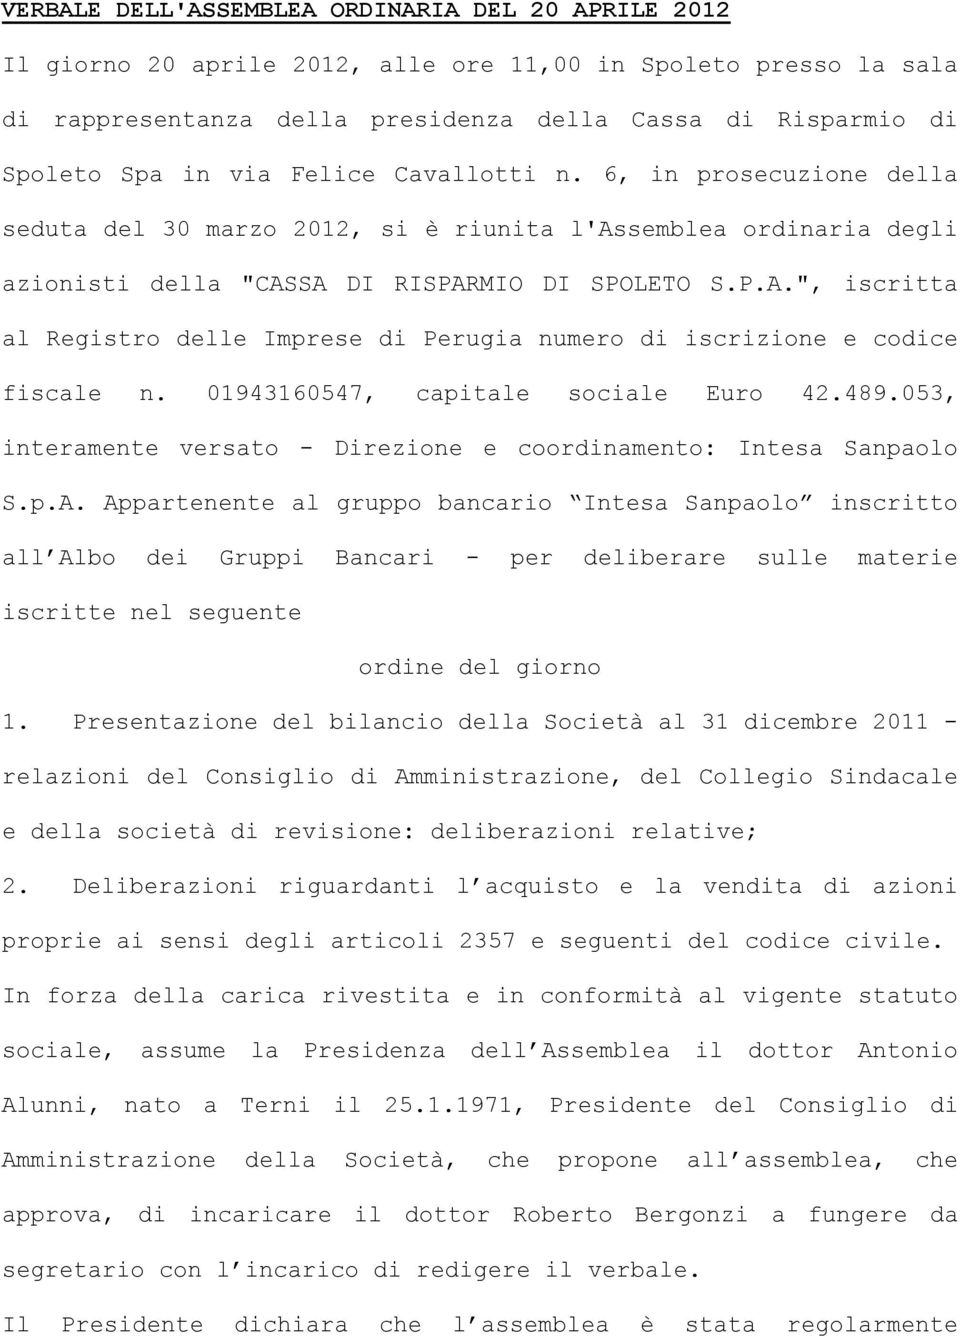 SA DI RISPARMIO DI SPOLETO S.P.A.", iscritta al Registro delle Imprese di Perugia numero di iscrizione e codice fiscale n. 01943160547, capitale sociale Euro 42.489.